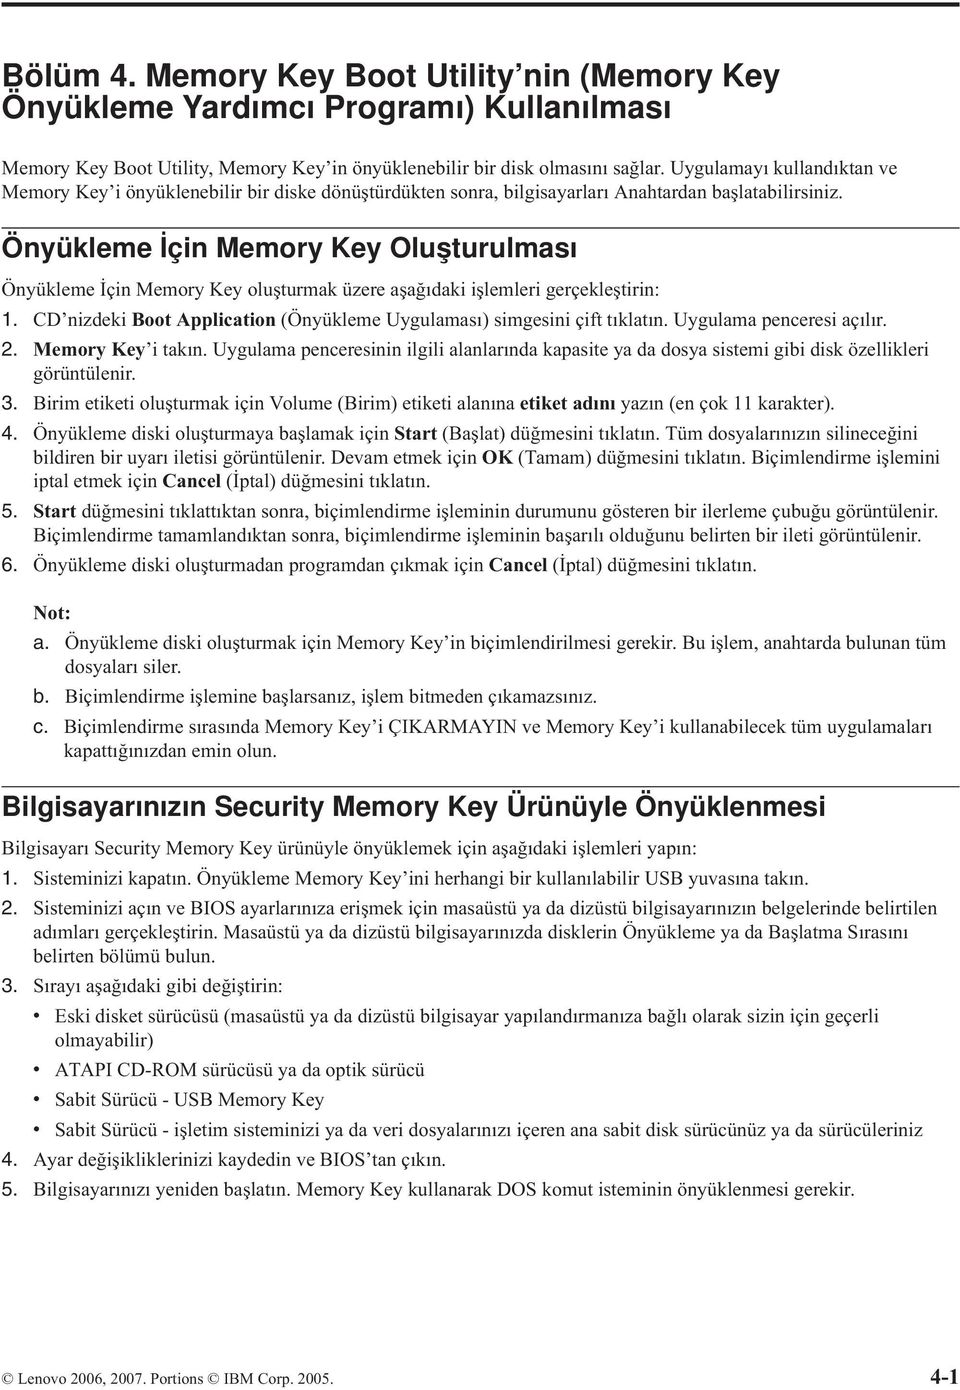 Önyükleme İçin Memory Key Oluşturulması Önyükleme İçin Memory Key oluşturmak üzere aşağıdaki işlemleri gerçekleştirin: 1. CD nizdeki Boot Application (Önyükleme Uygulaması) simgesini çift tıklatın.